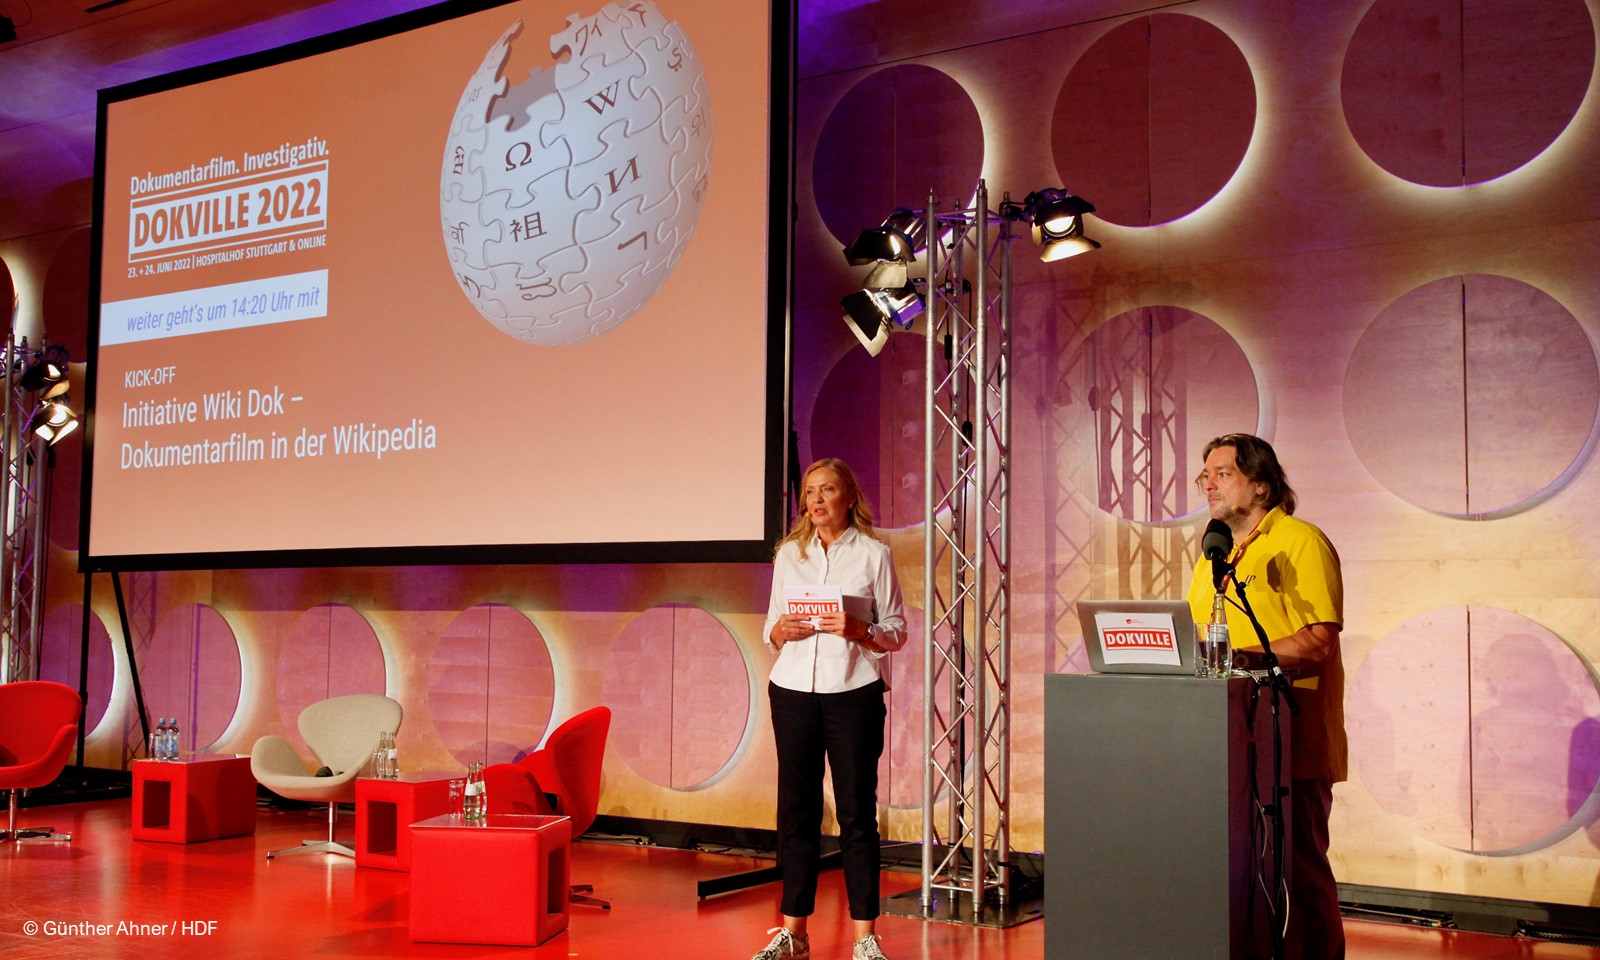 Astrid Beyer und Jenst Best auf der Bühne beim Vortrag zur Initiative Wiki DOK